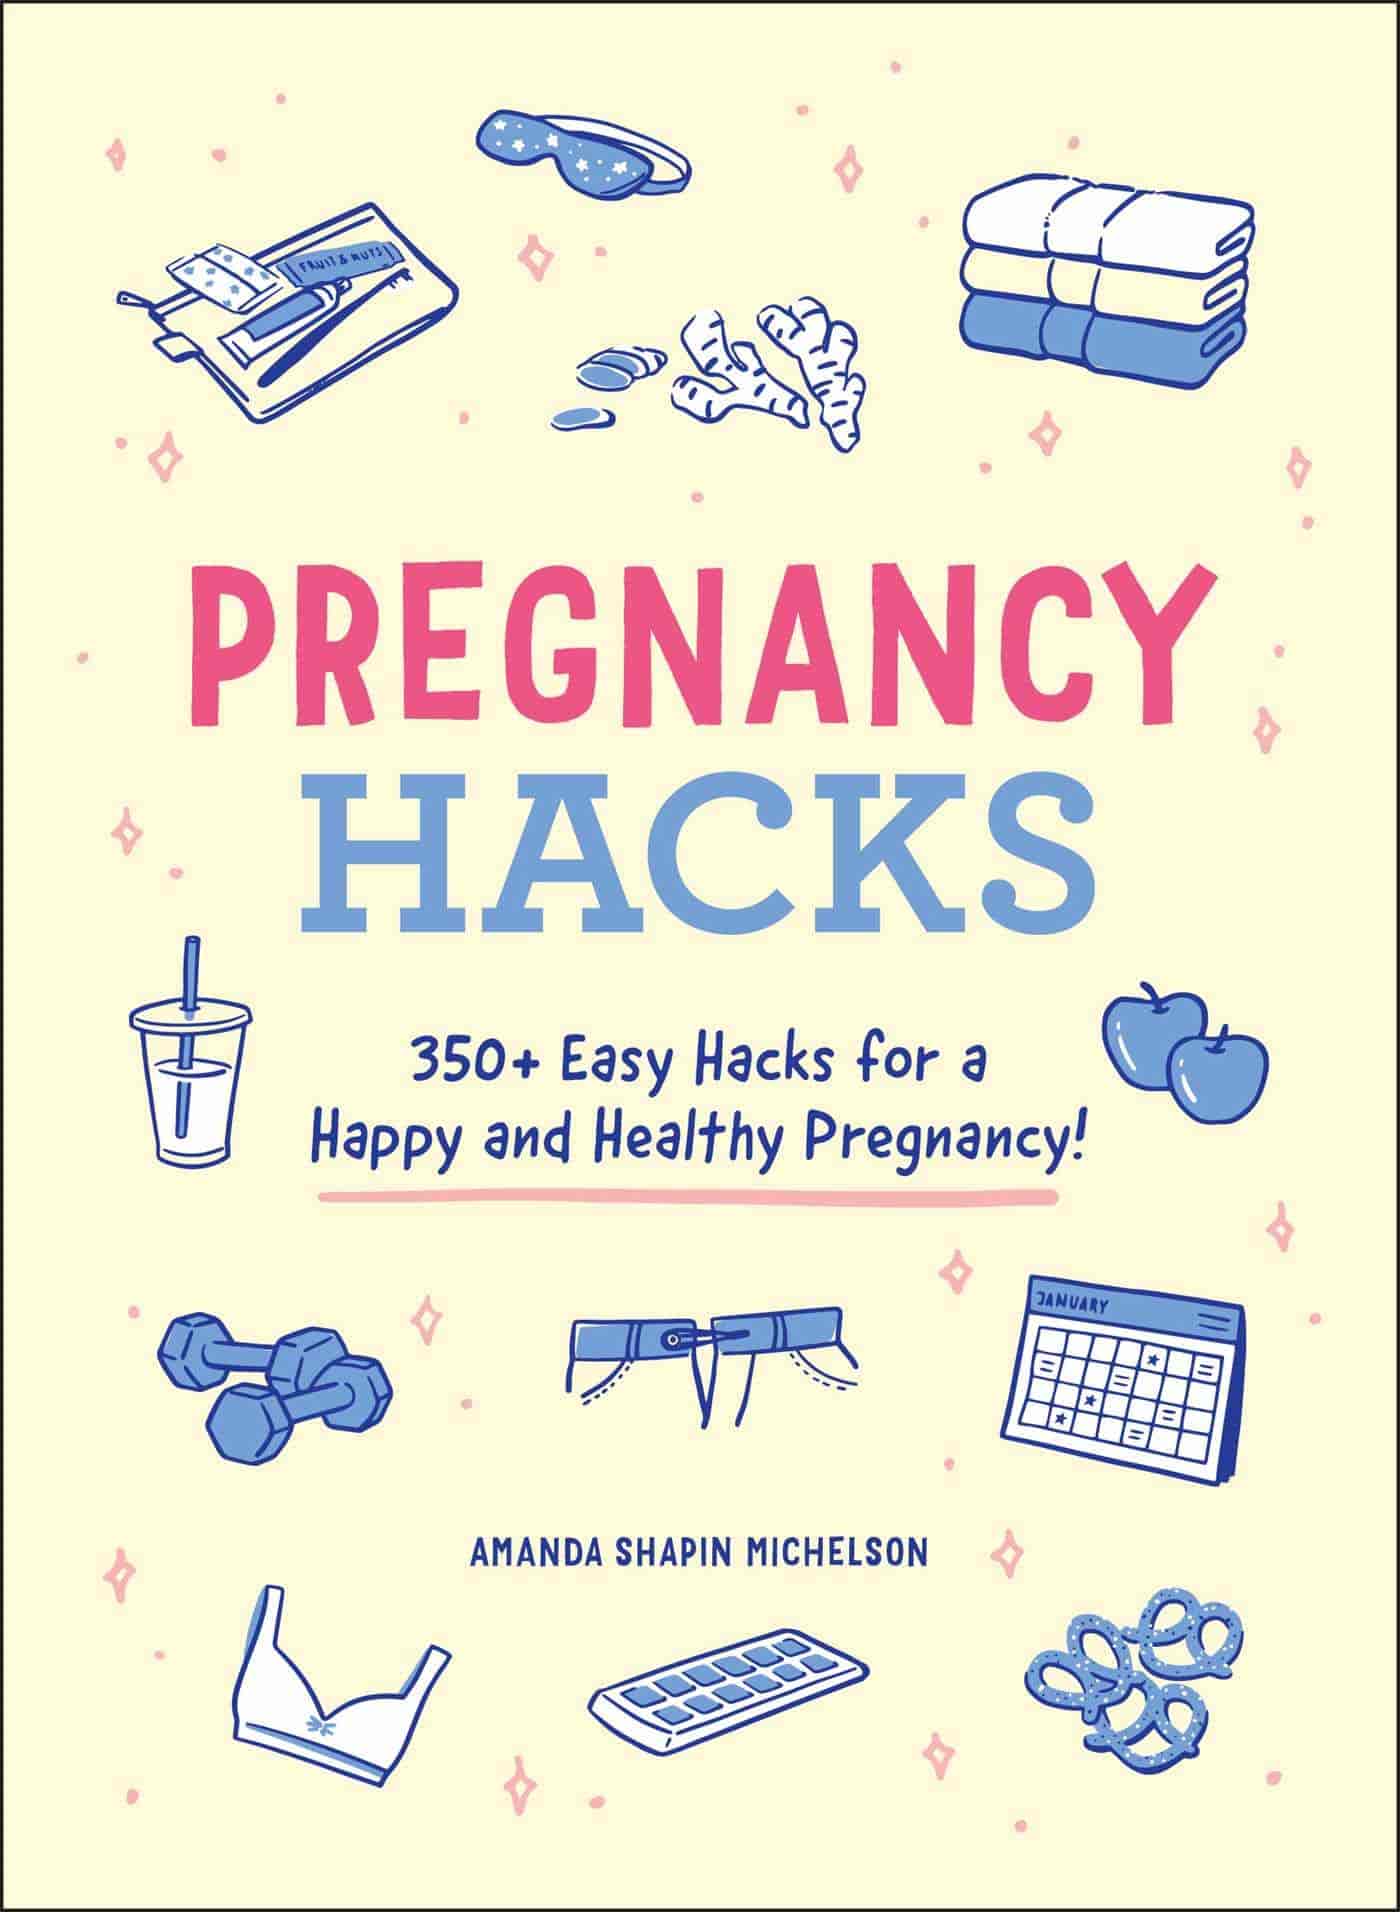 Pregnancy Hacks Book - 350+ Easy Hacks for a Happy and Healthy Pregnancy!